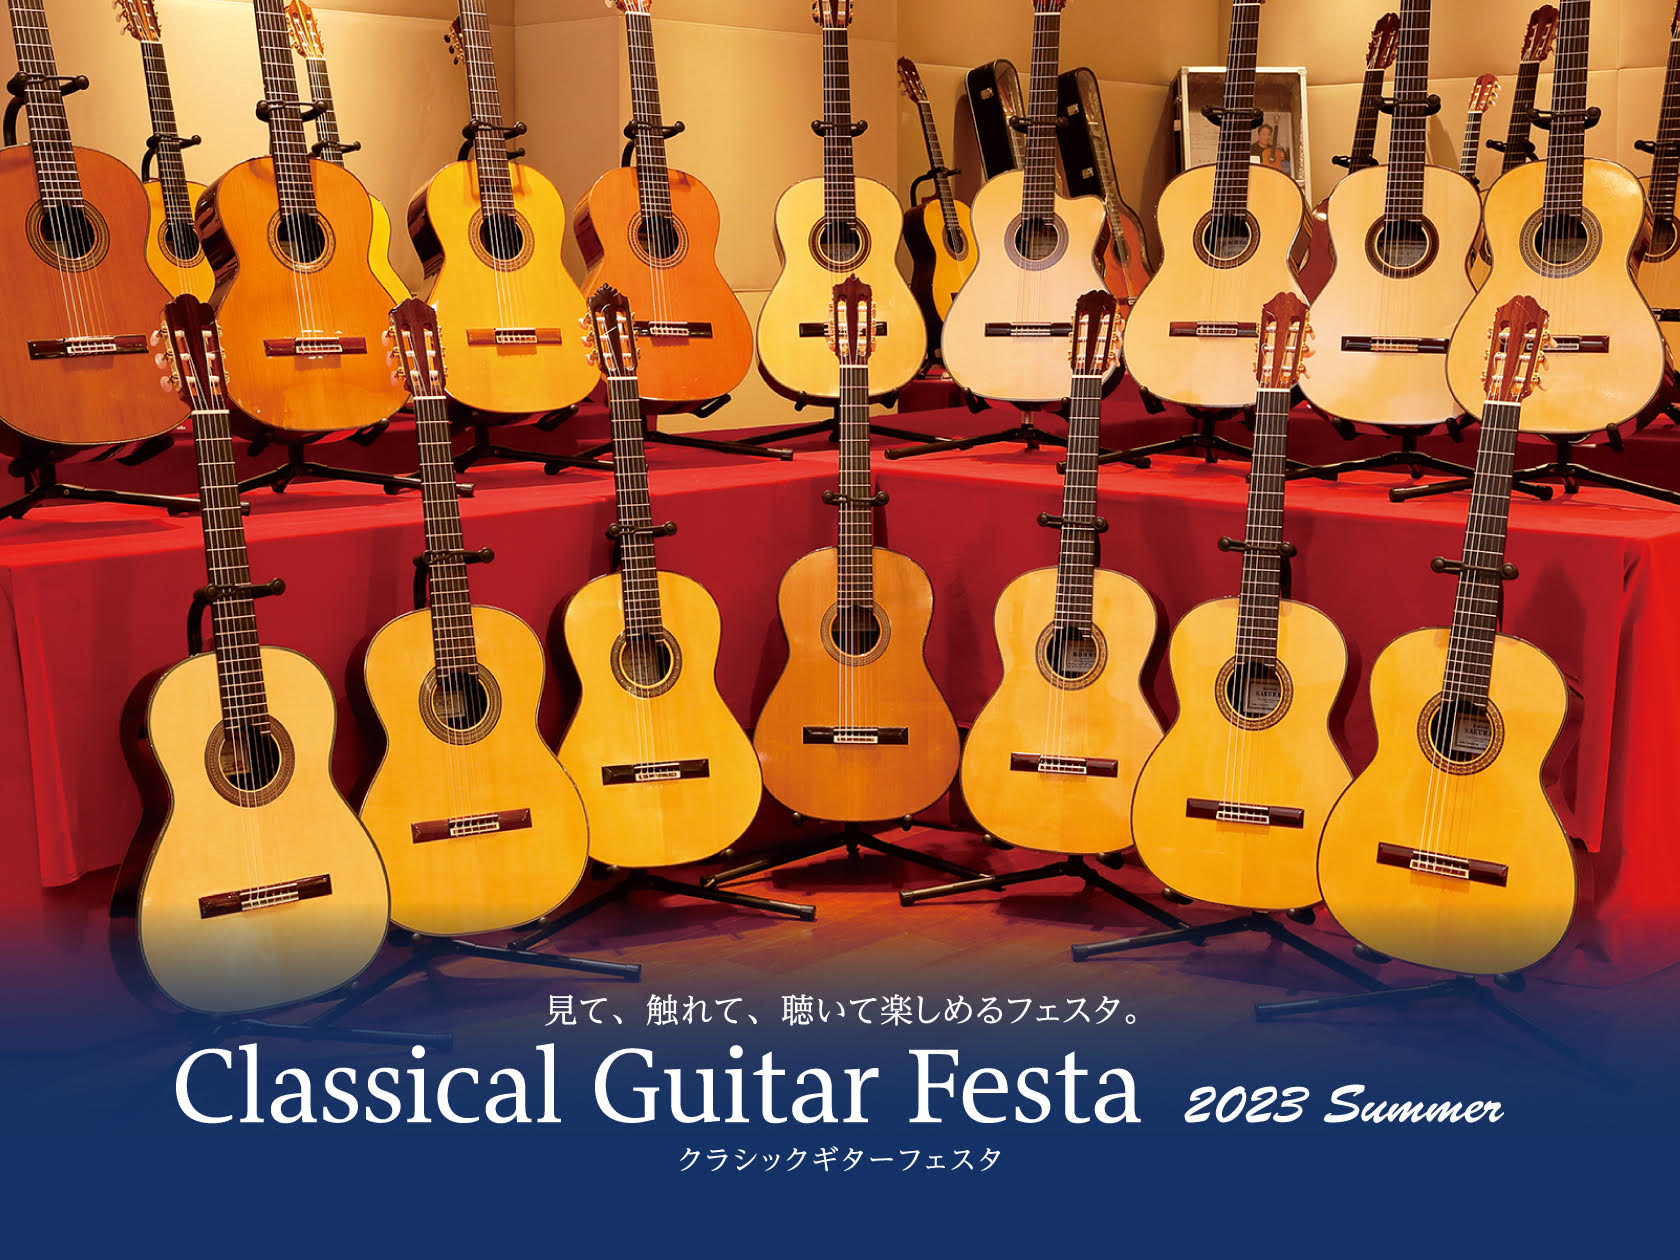 CONTENTSクラシックギターフェスタとは？来場特典のご紹介展示予定楽器のご紹介イベントのご紹介お問い合わせはコチラからクラシックギターフェスタとは？ クラシックギターフェスタ(Classical Guitar Festa)は、島村楽器が全国7拠点で開催するクラシックギター展示即売会です。この日の […]